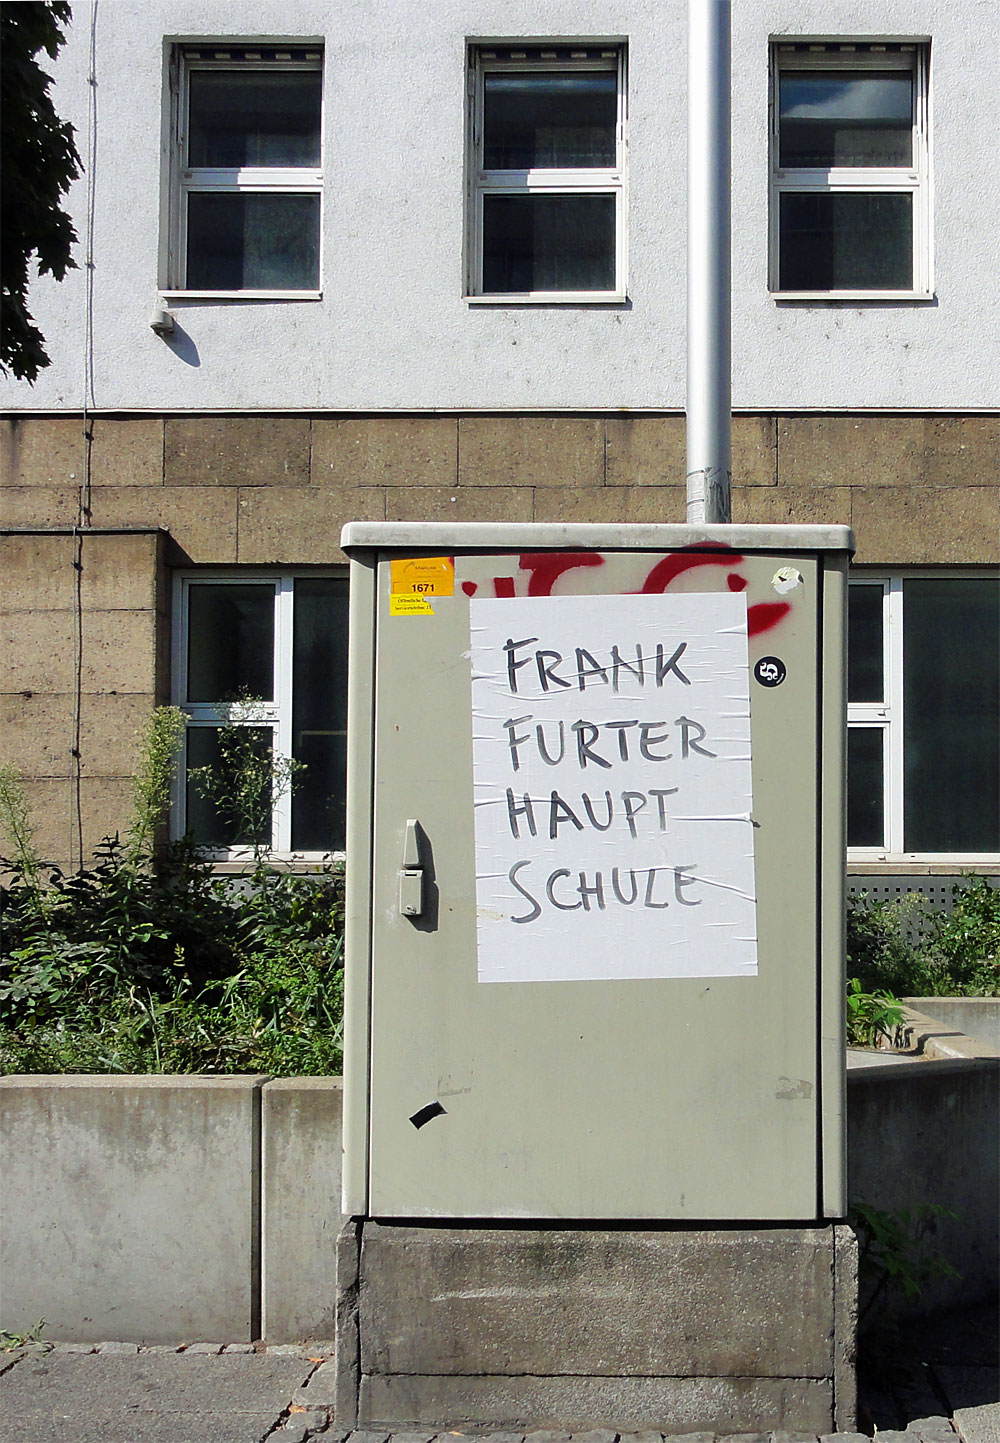 Plakat in Frankfurt mit Aufschrift "Frankfurter Hauptschule"